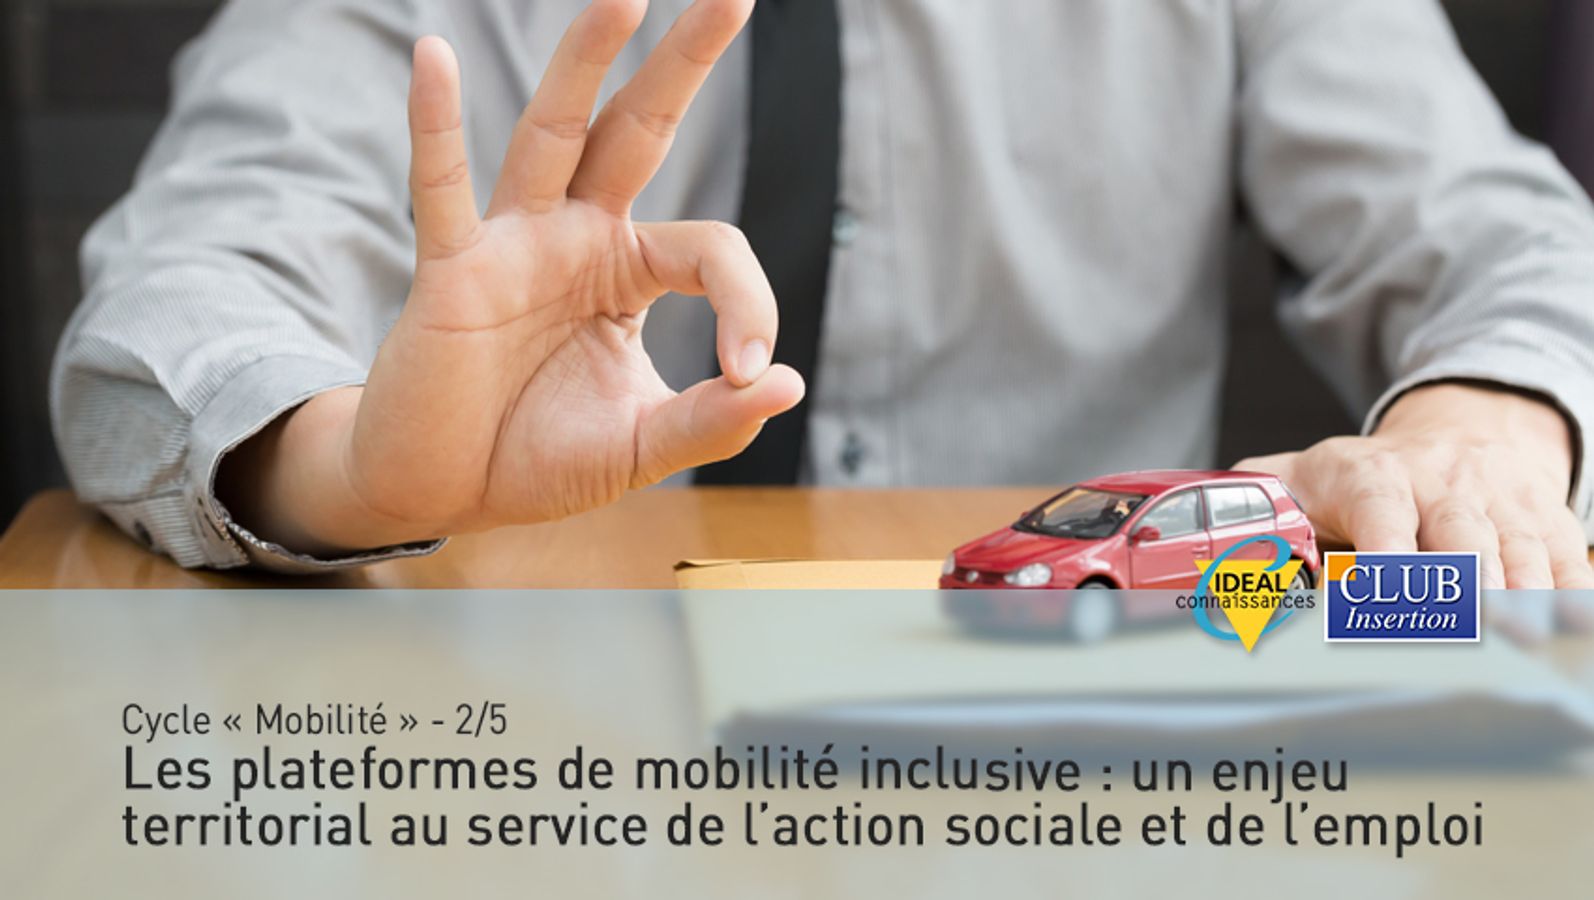 Cycle « Mobilité » - 2/5 – Les plateformes de mobilité inclusive : un enjeu territorial au service de l’action sociale et de l’emploi